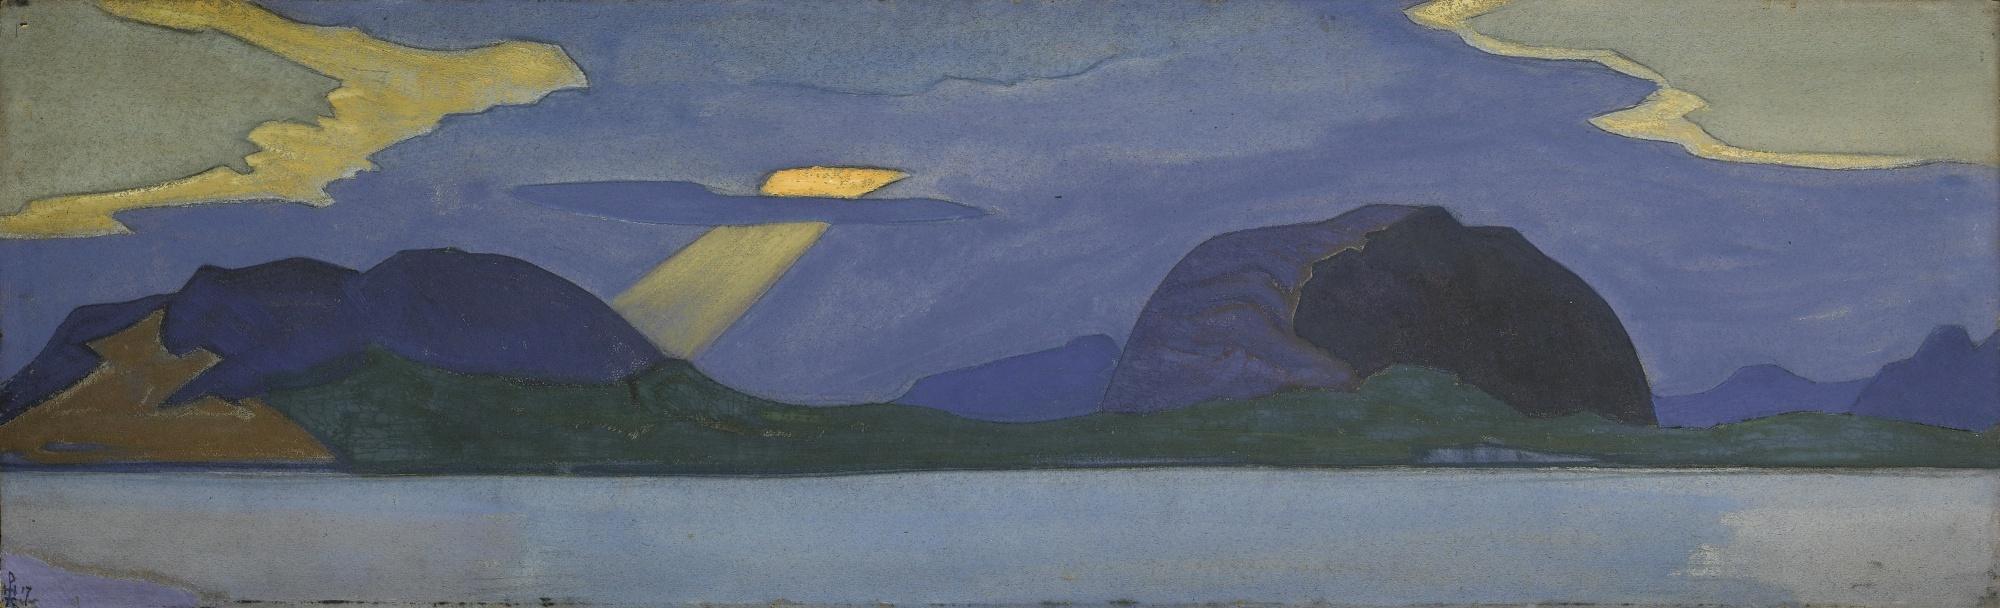 Н.К.Рерих. Закат - Замковая гора. 1917